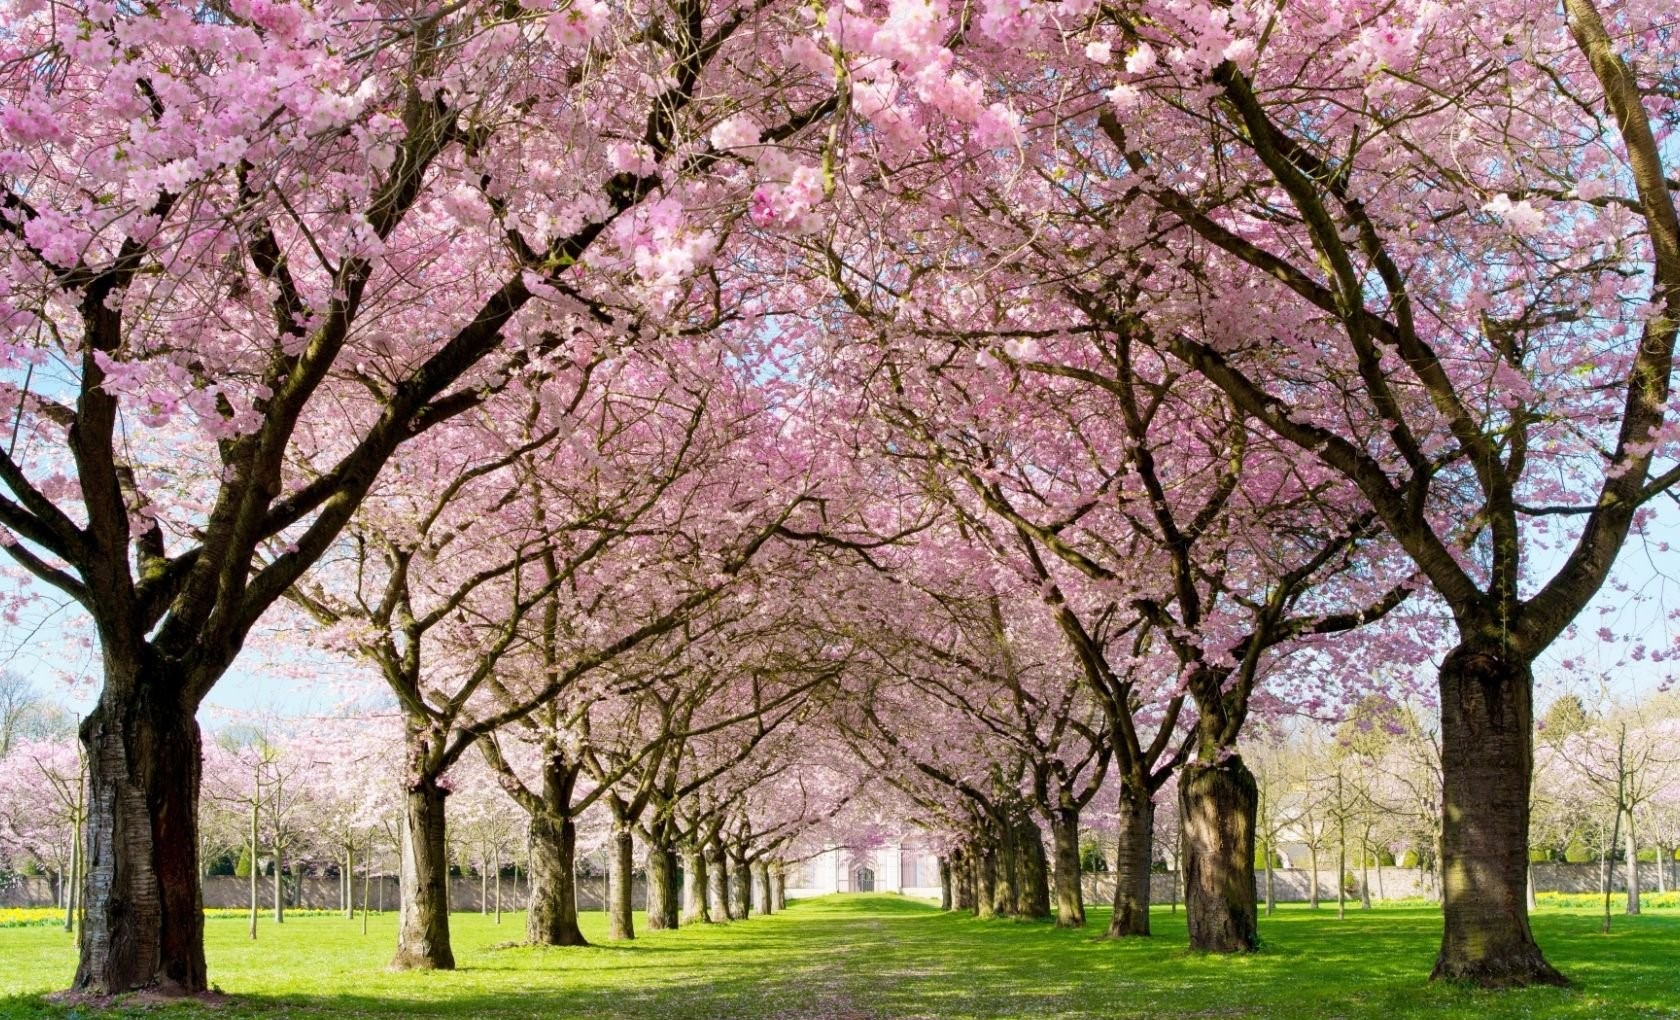 تصویر فصل بهار در پارک سرسبز و خوشگل با کیفیت دیدنی